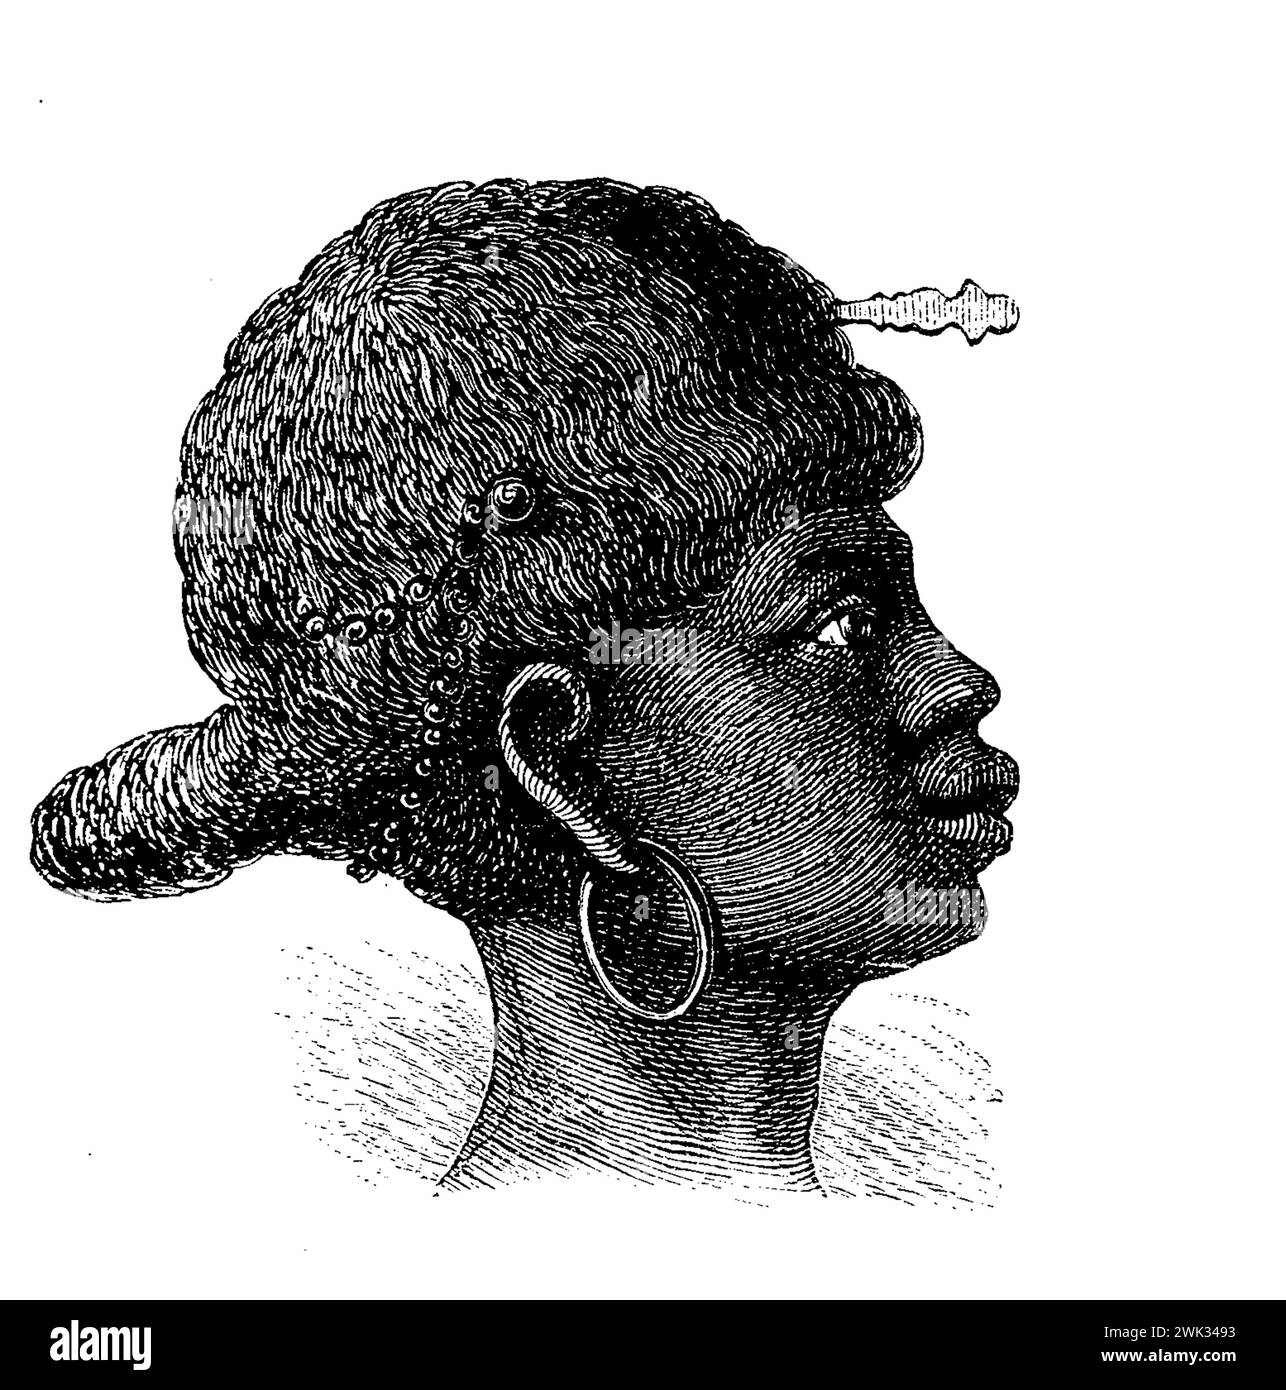 Coiffure d'Afrique équatoriale occidentale d'une femme de la tribu Ashira, illustration du XIXe siècle Banque D'Images